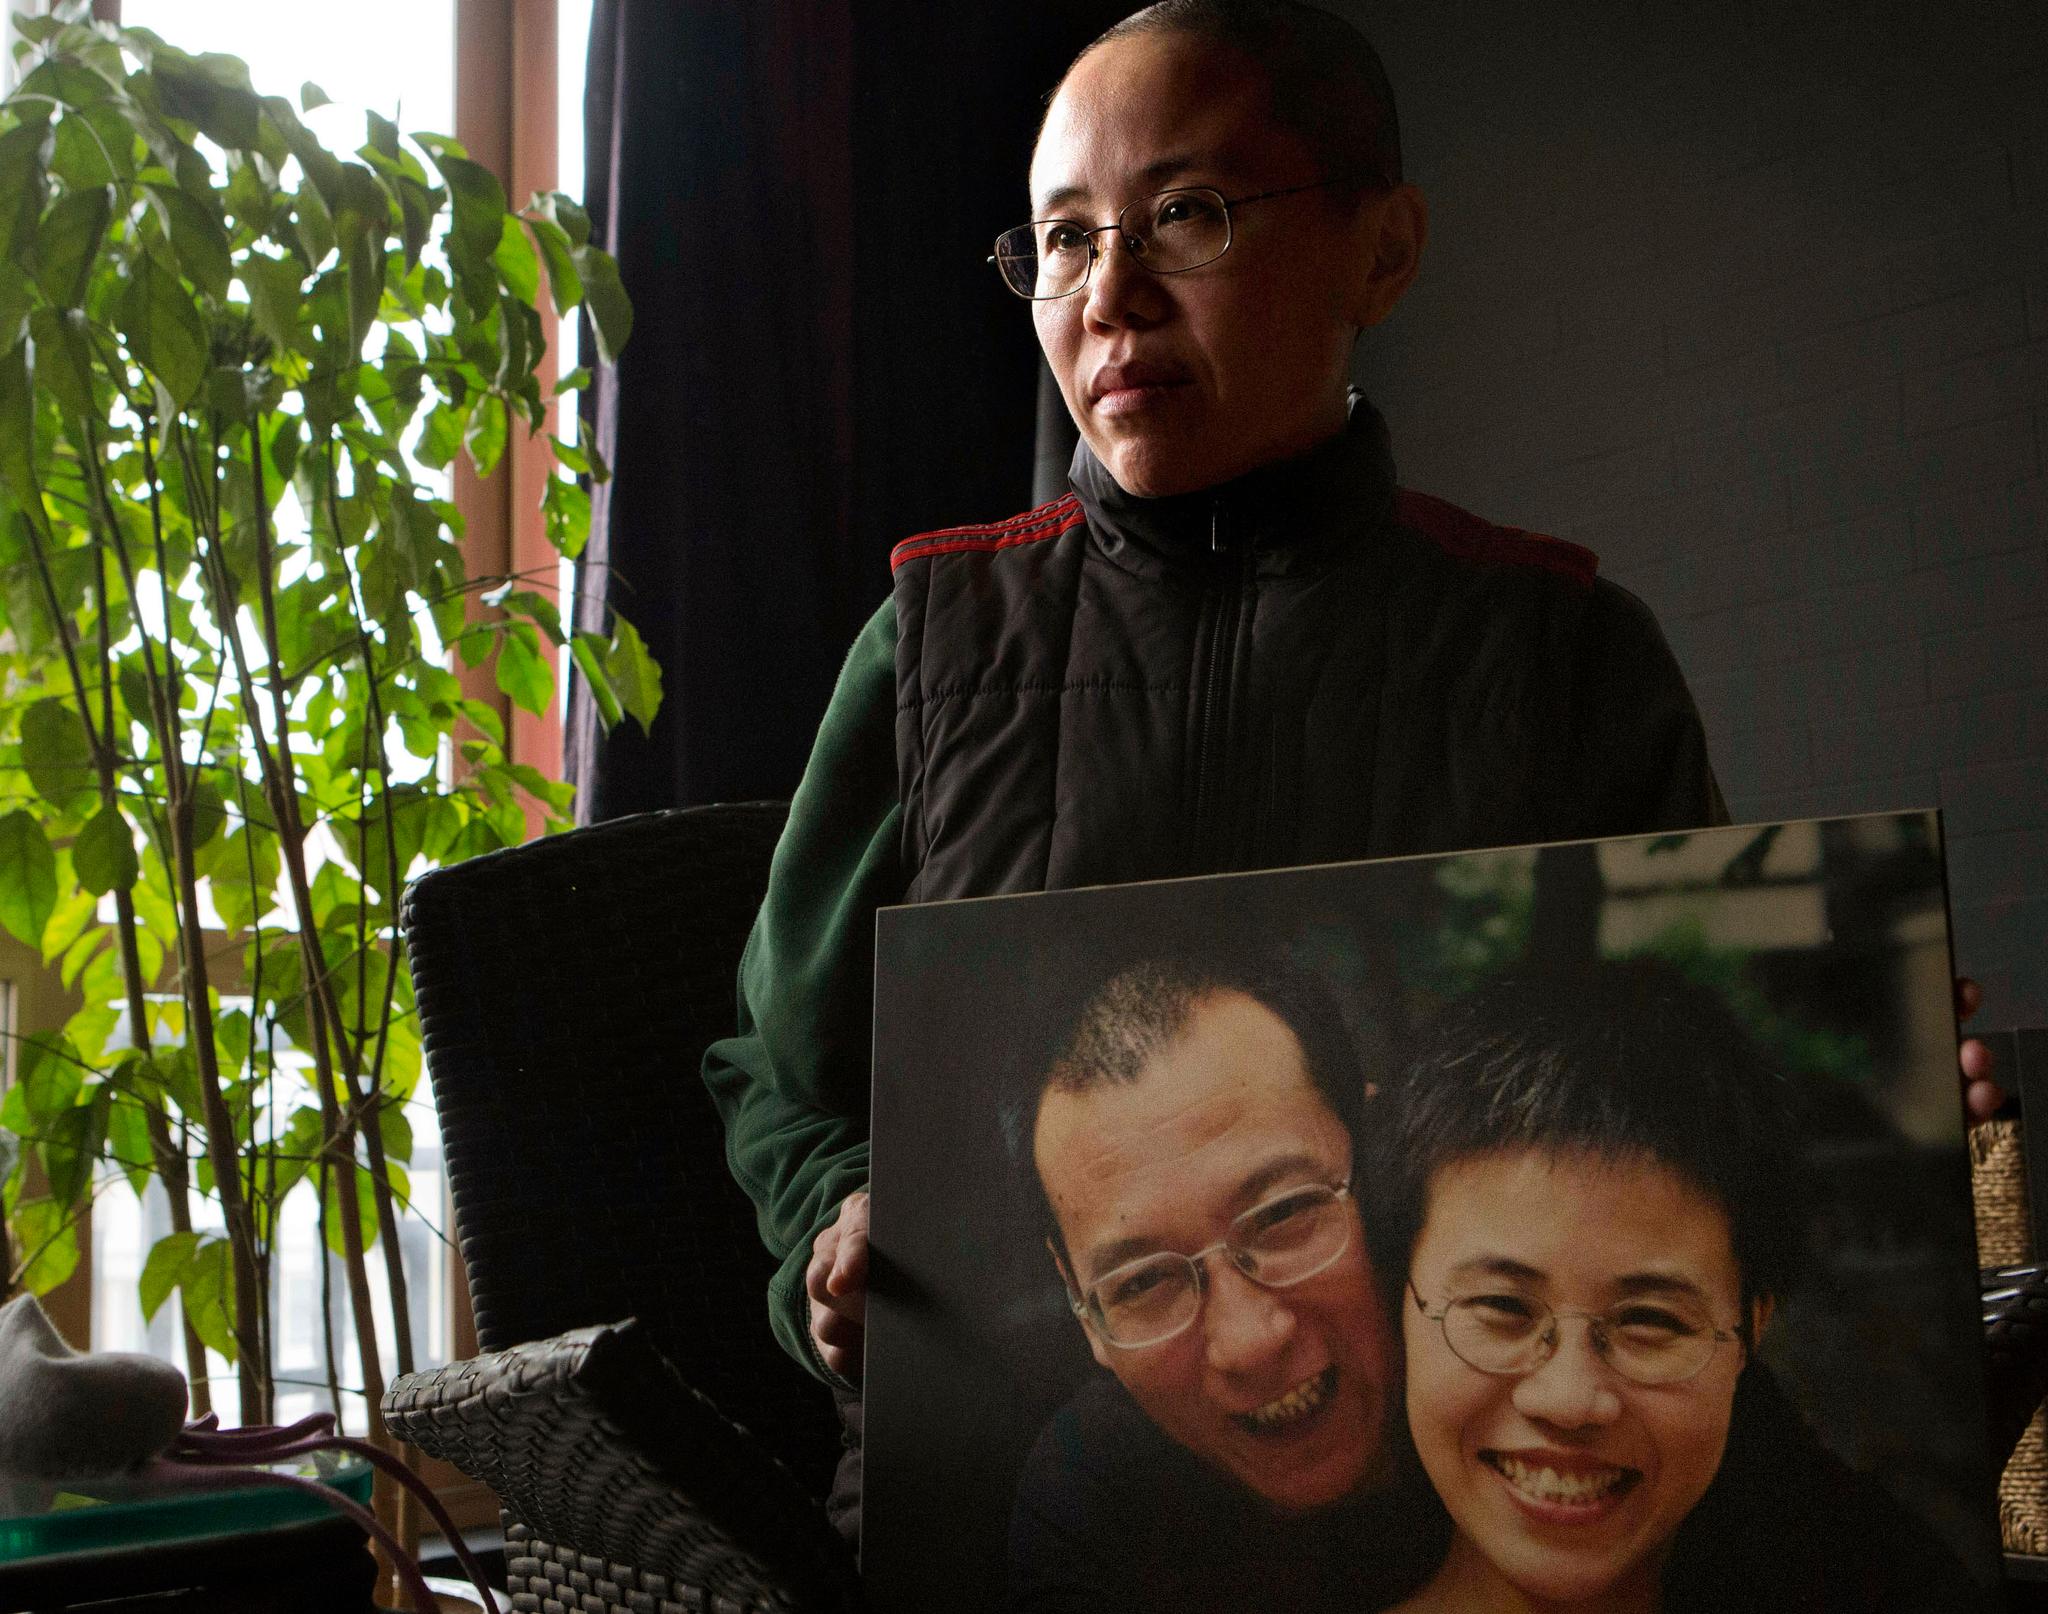 Dette bildet fra 2012 viser Liu Xiaobos kone, Liu Xia, med et bilde av seg og sin fengslede mann. USA er blant landene som har bedt Kina om å innfri fredsprisvinnerens ønske om kreftbehandling i Vesten.